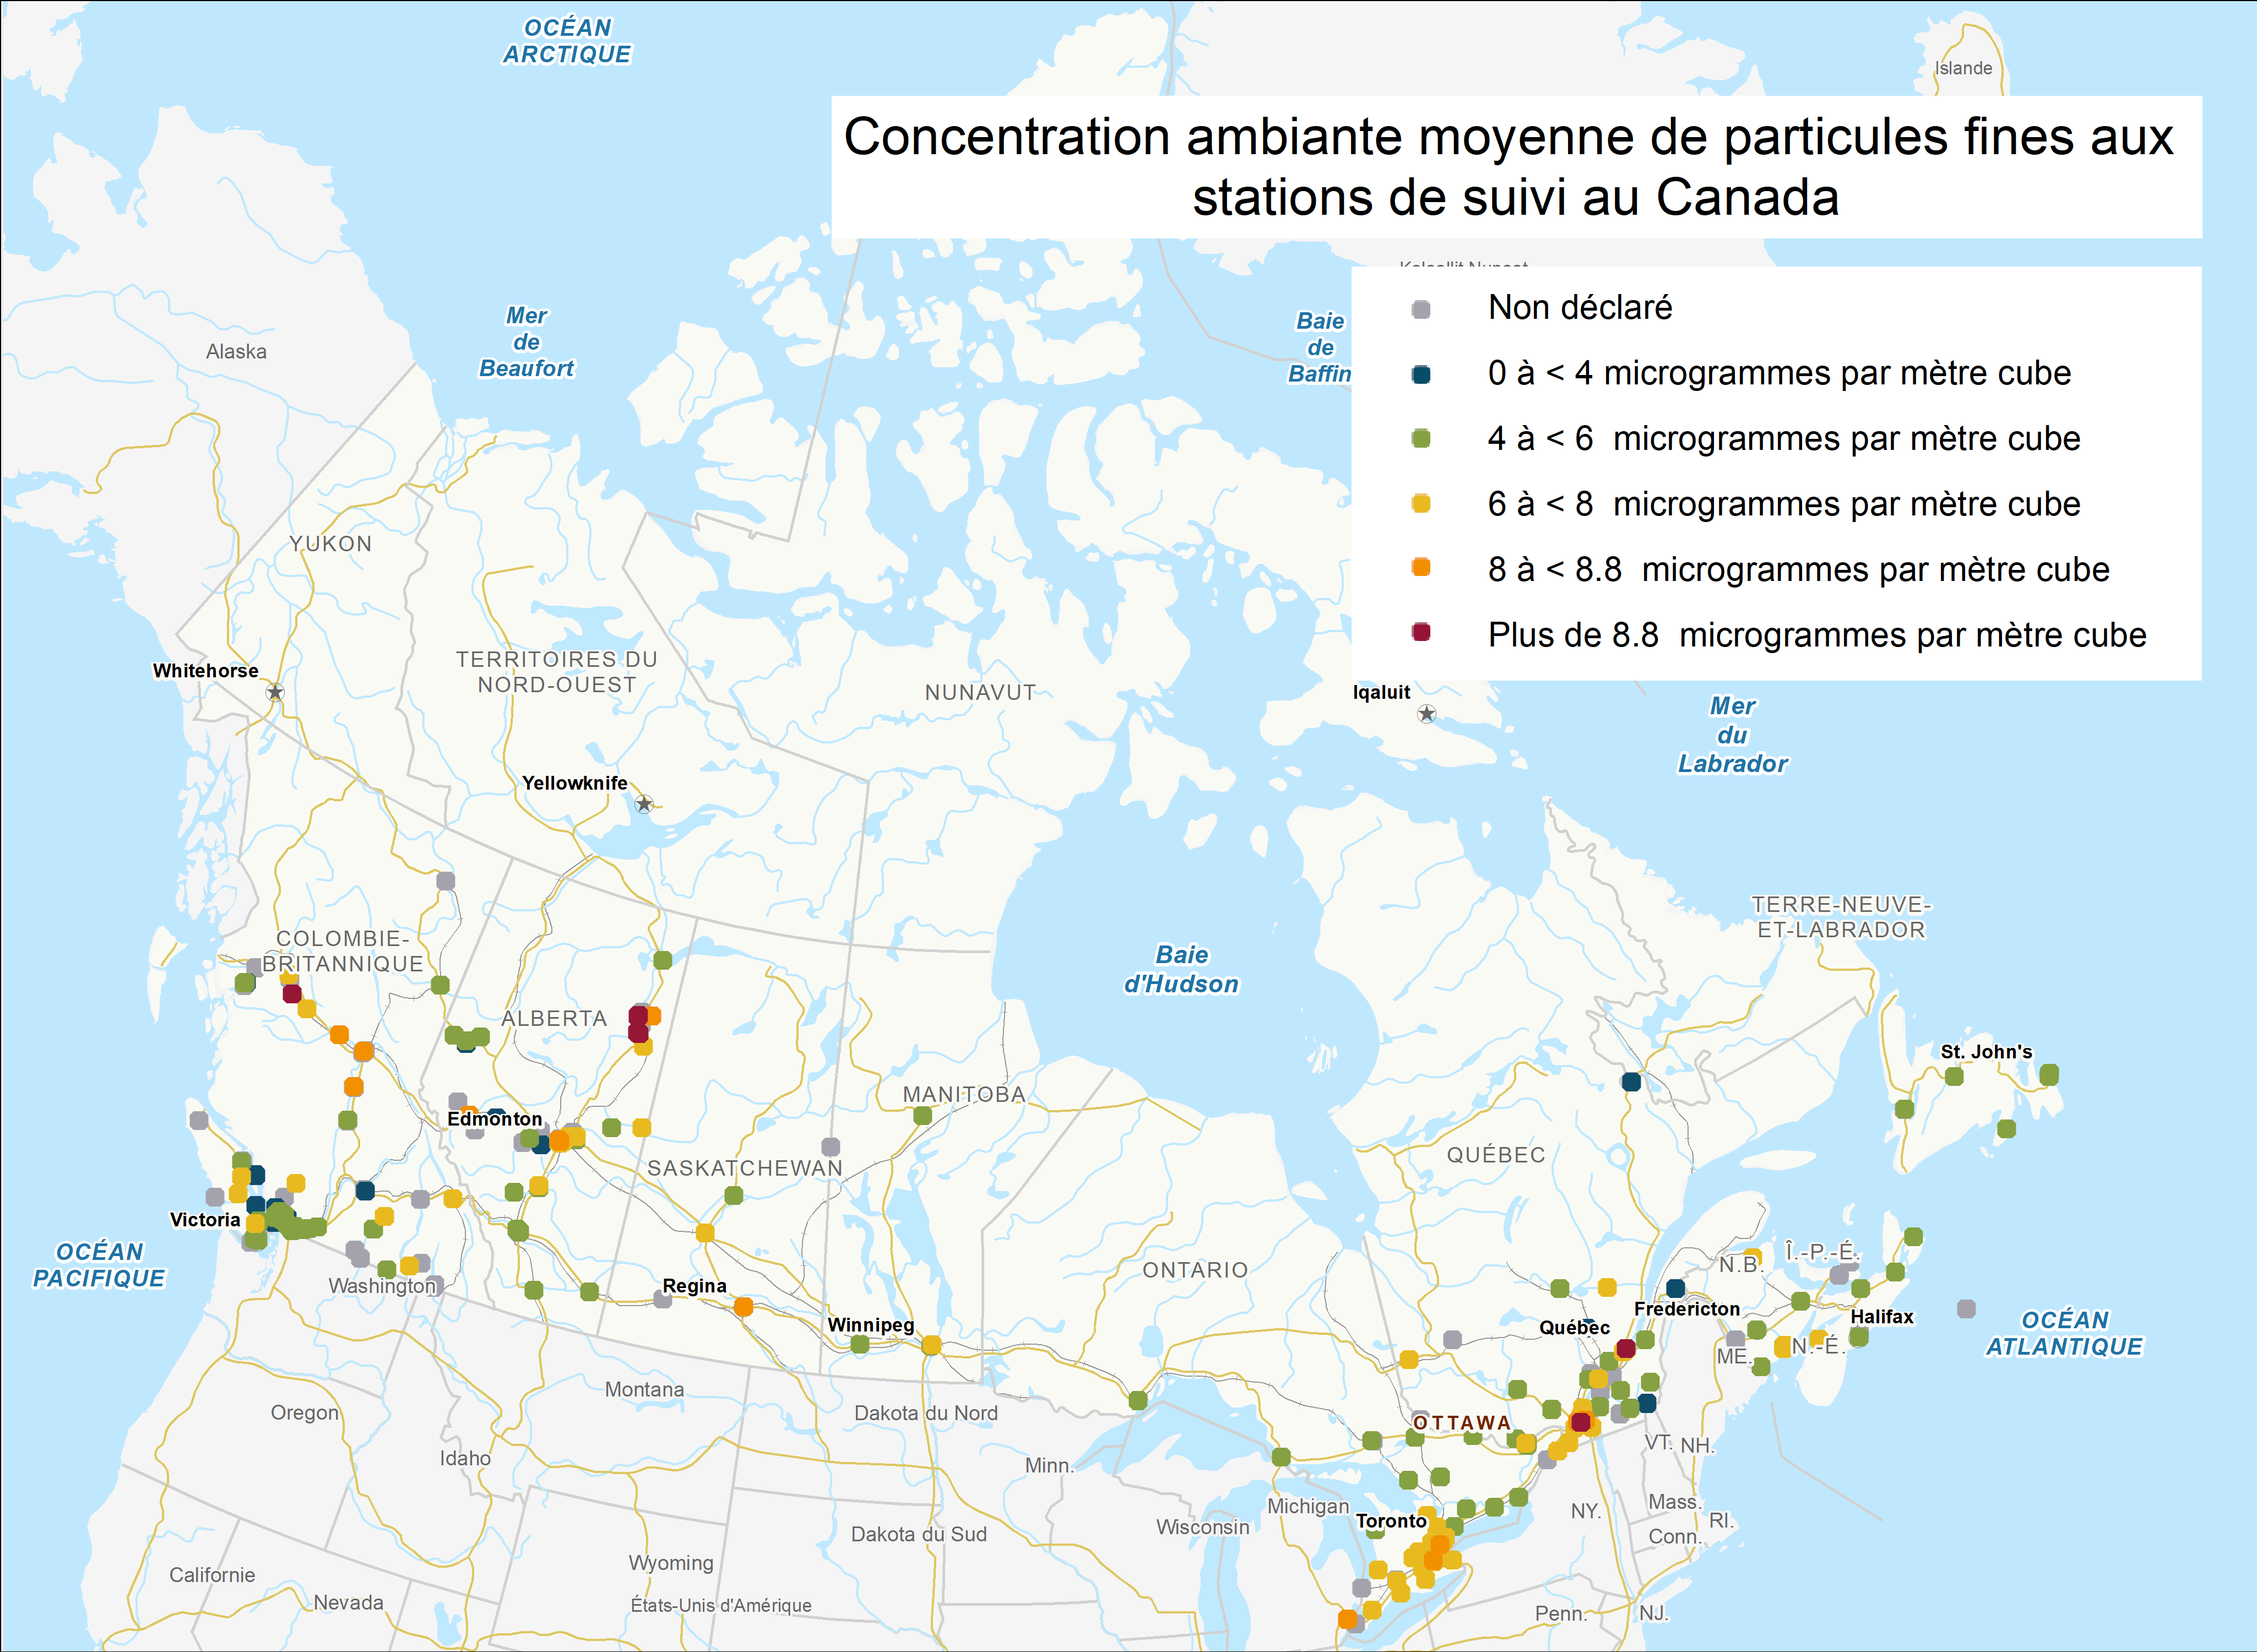 Concentration ambiante moyenne de particules fines aux stations de suivi au Canada